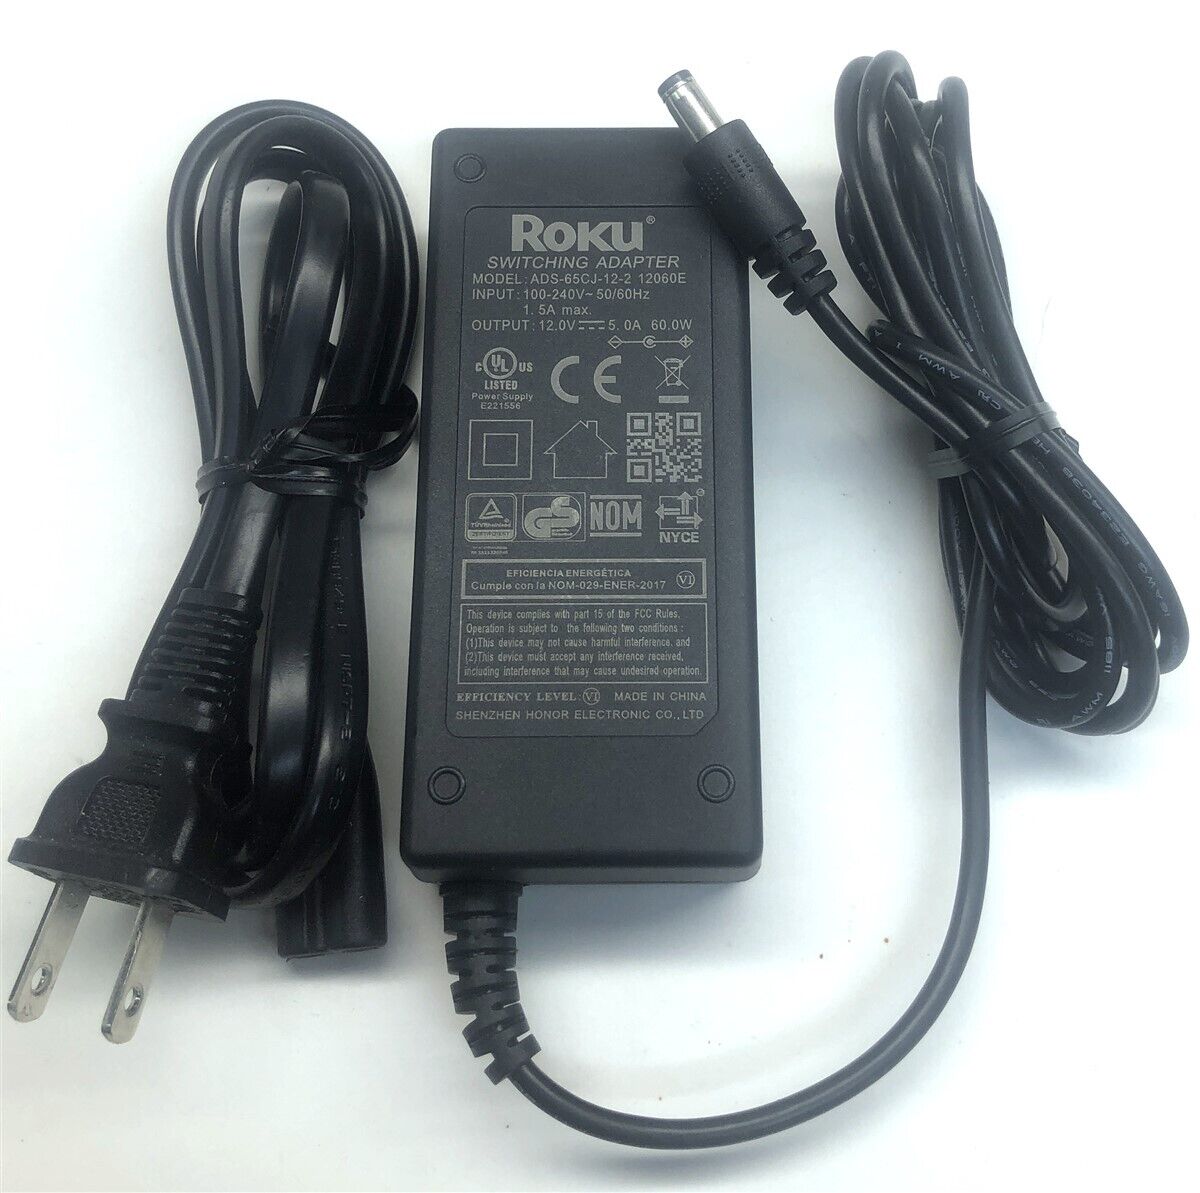 Genuine Roku charger AC Adapter Power Supply ADS-65CJ-12-2 12060E 12V 5A 60W Brand Roku Type AC/DC Adapter Output Volta - Click Image to Close